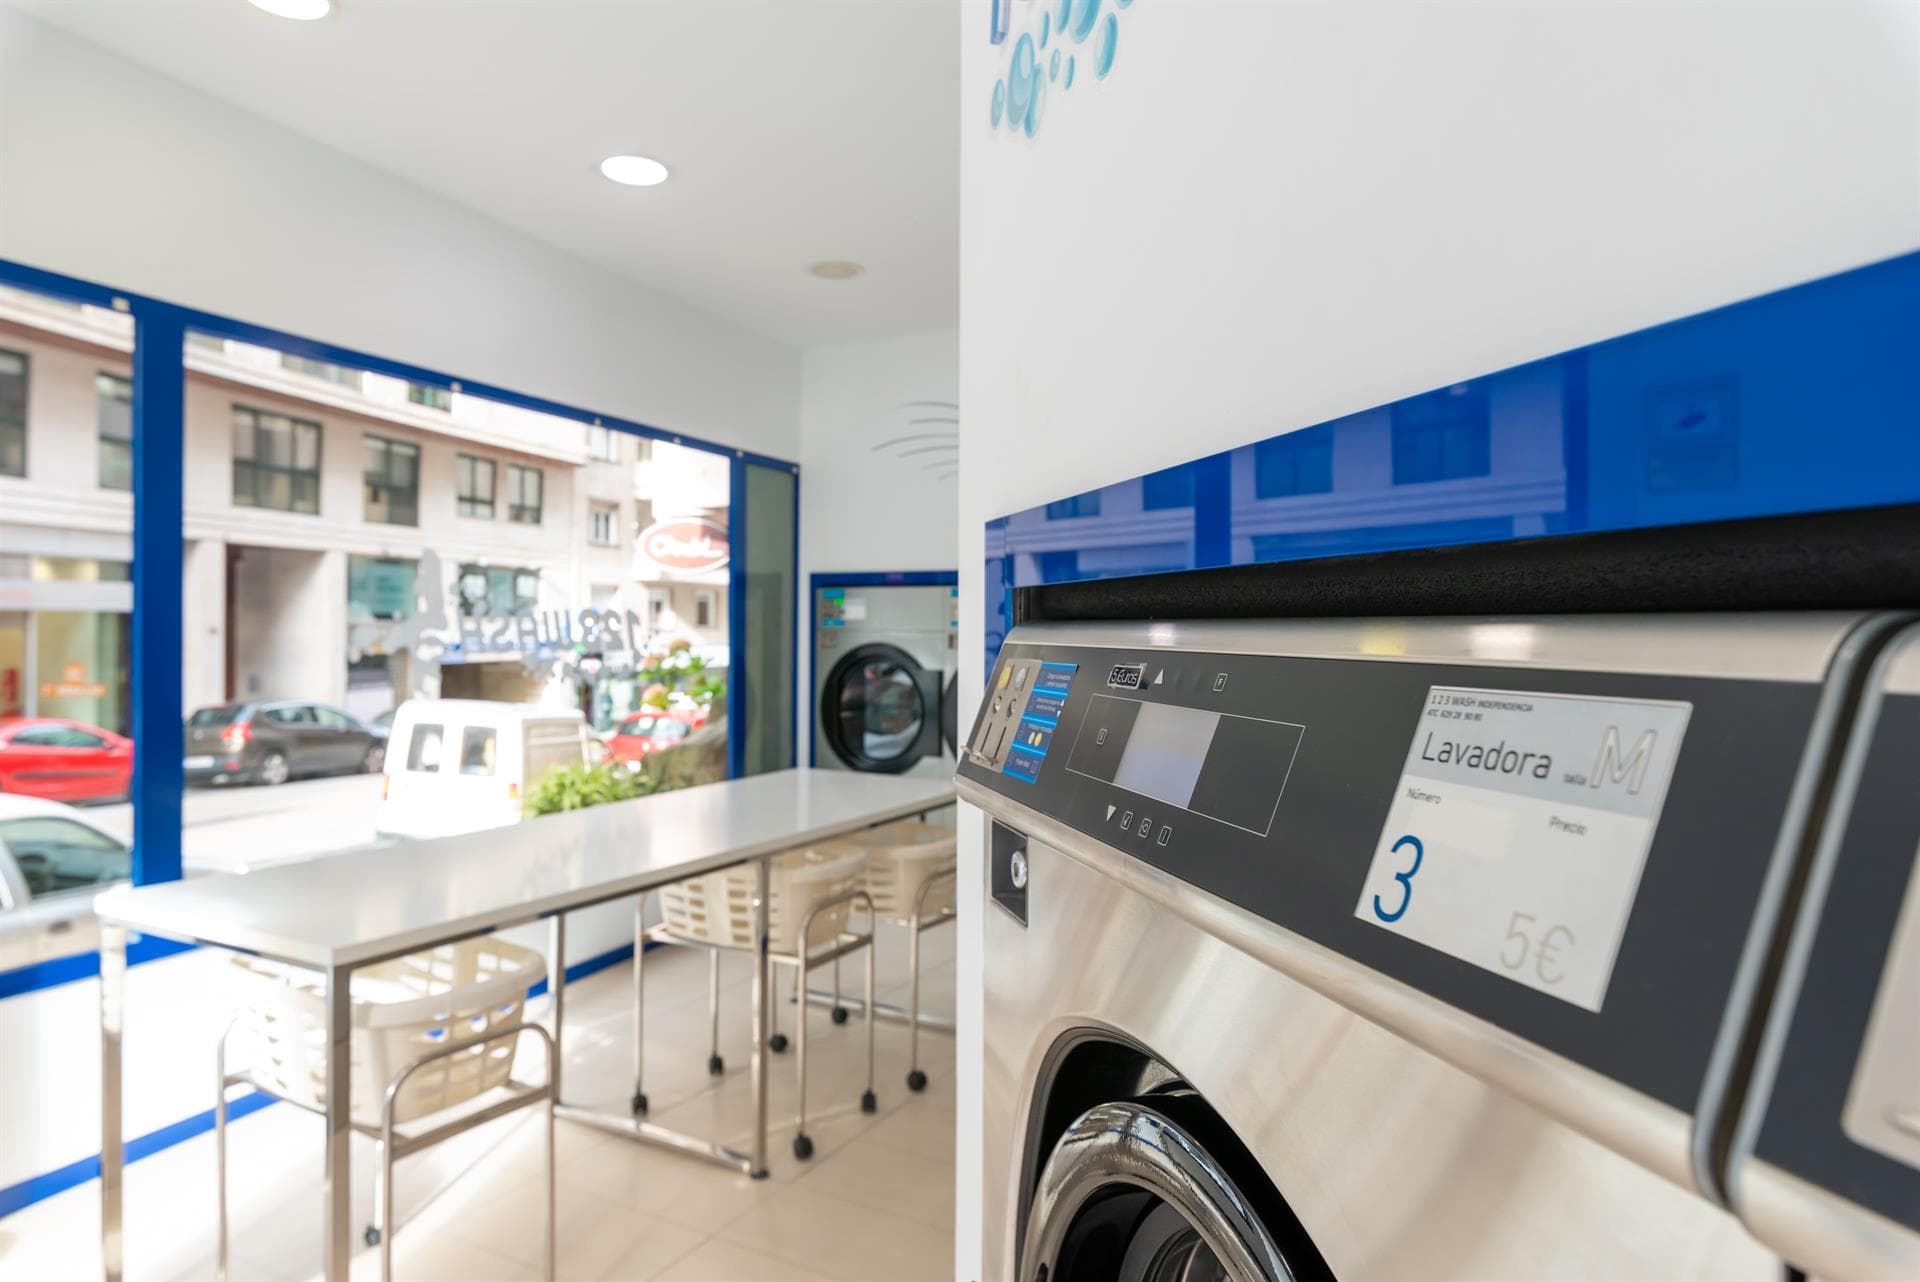 1 2 3 Wash - Última tecnología para el cuidado de tu ropa en Vigo y Nigrán